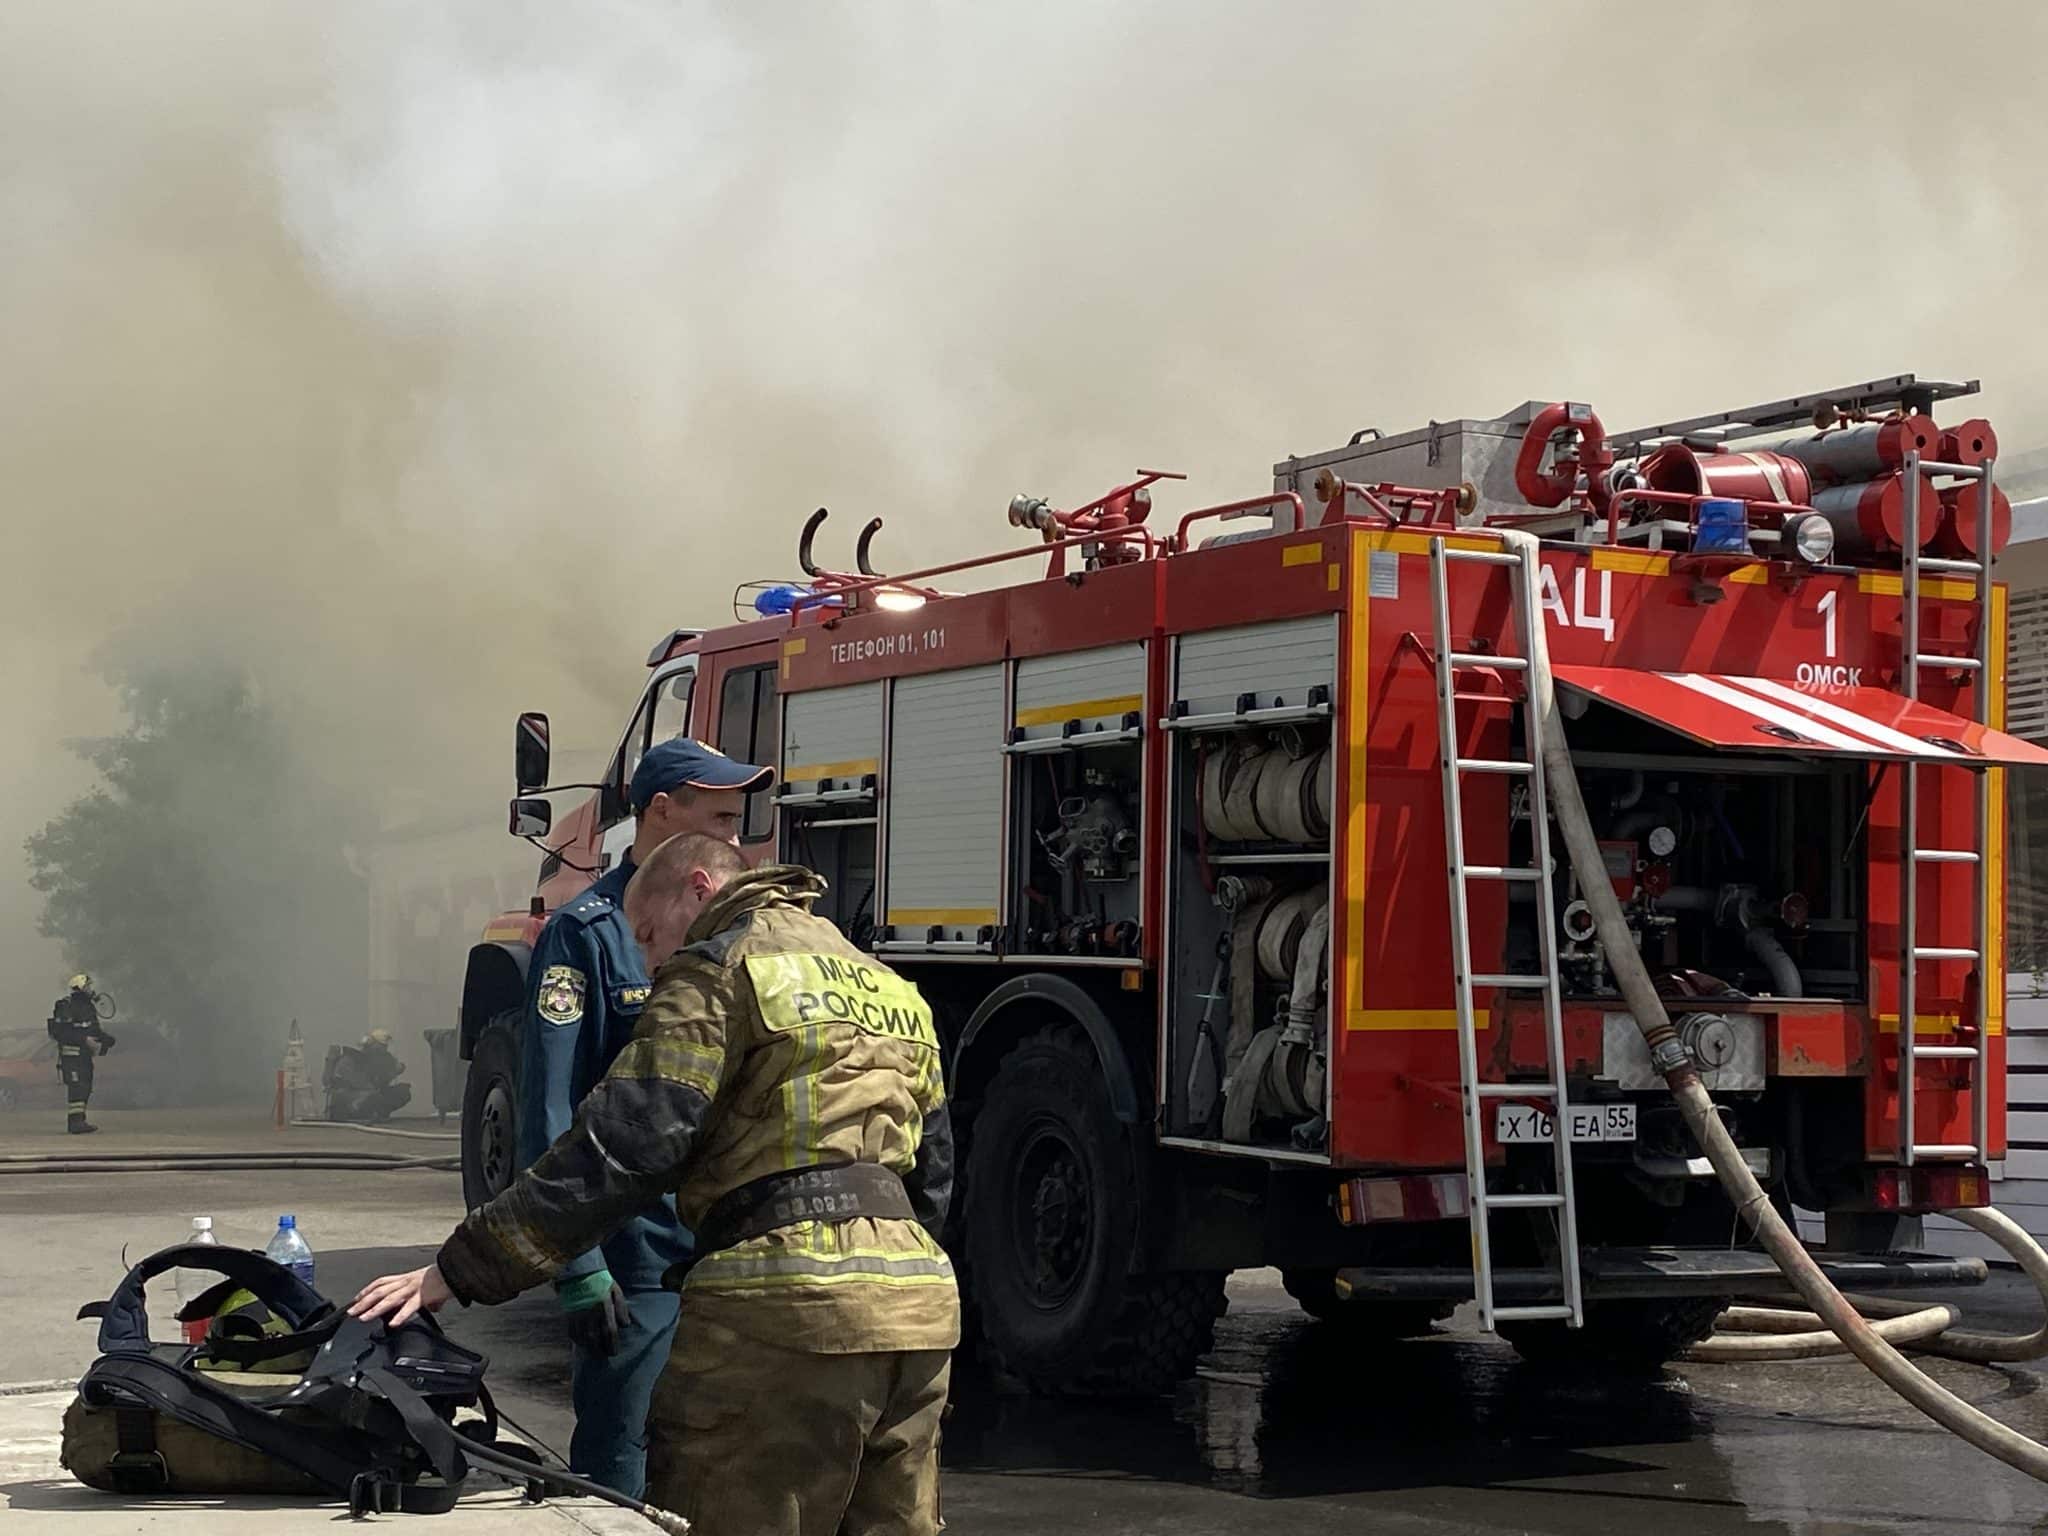 Дым столбом и 400 квадратов огня: фоторепортаж с пожара в ресторане "Хочу Пури" в Омске